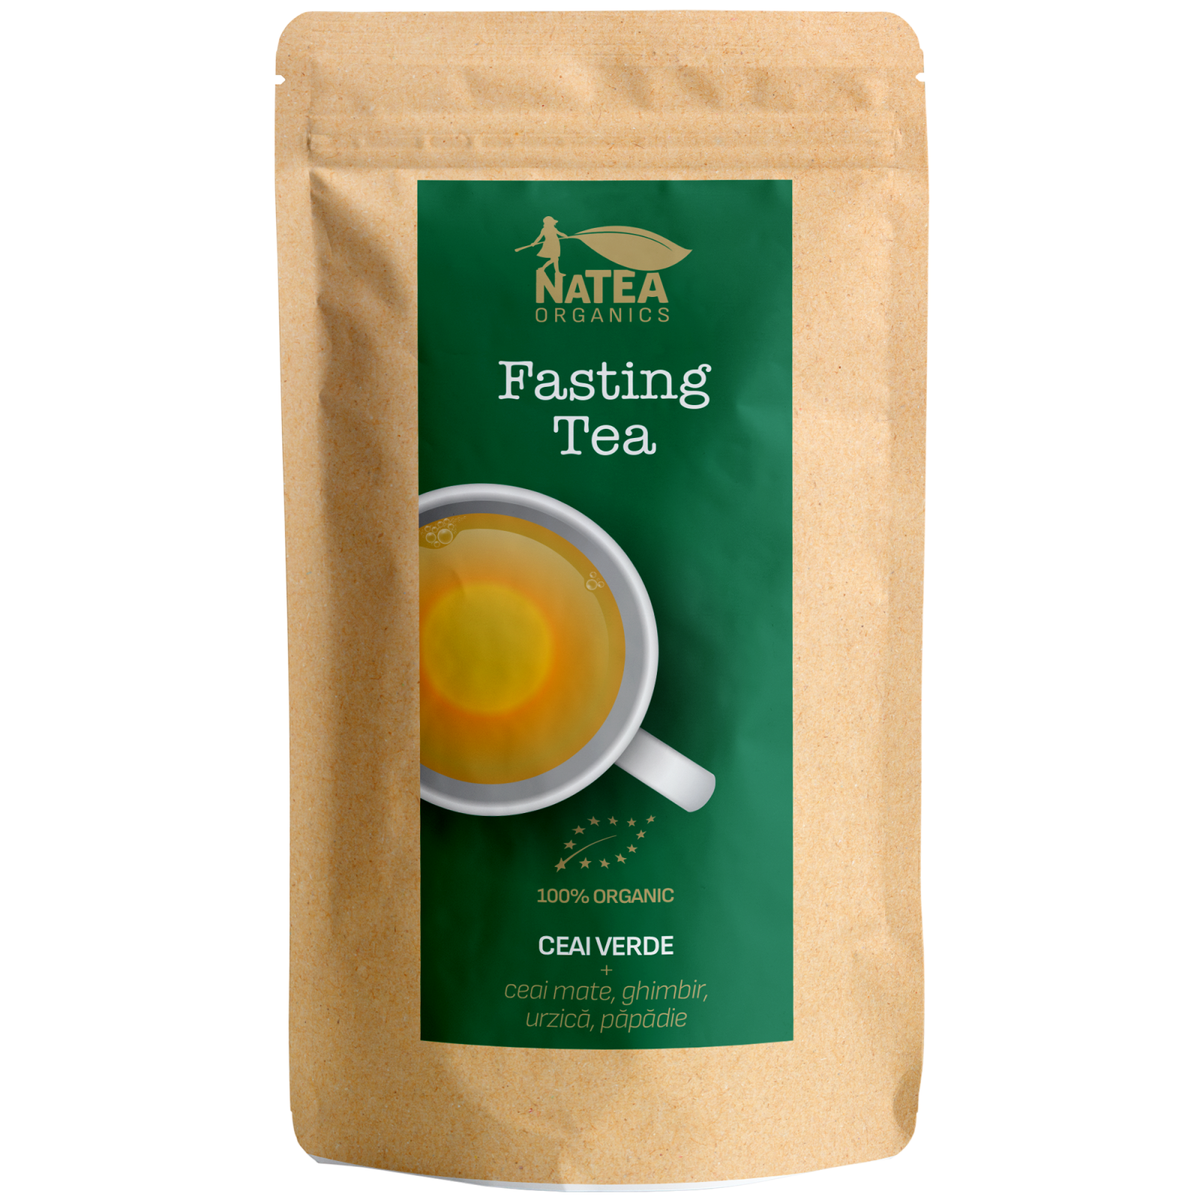 Ceai verde, mate, ghimbir, urzica, papadie - Fasting Tea